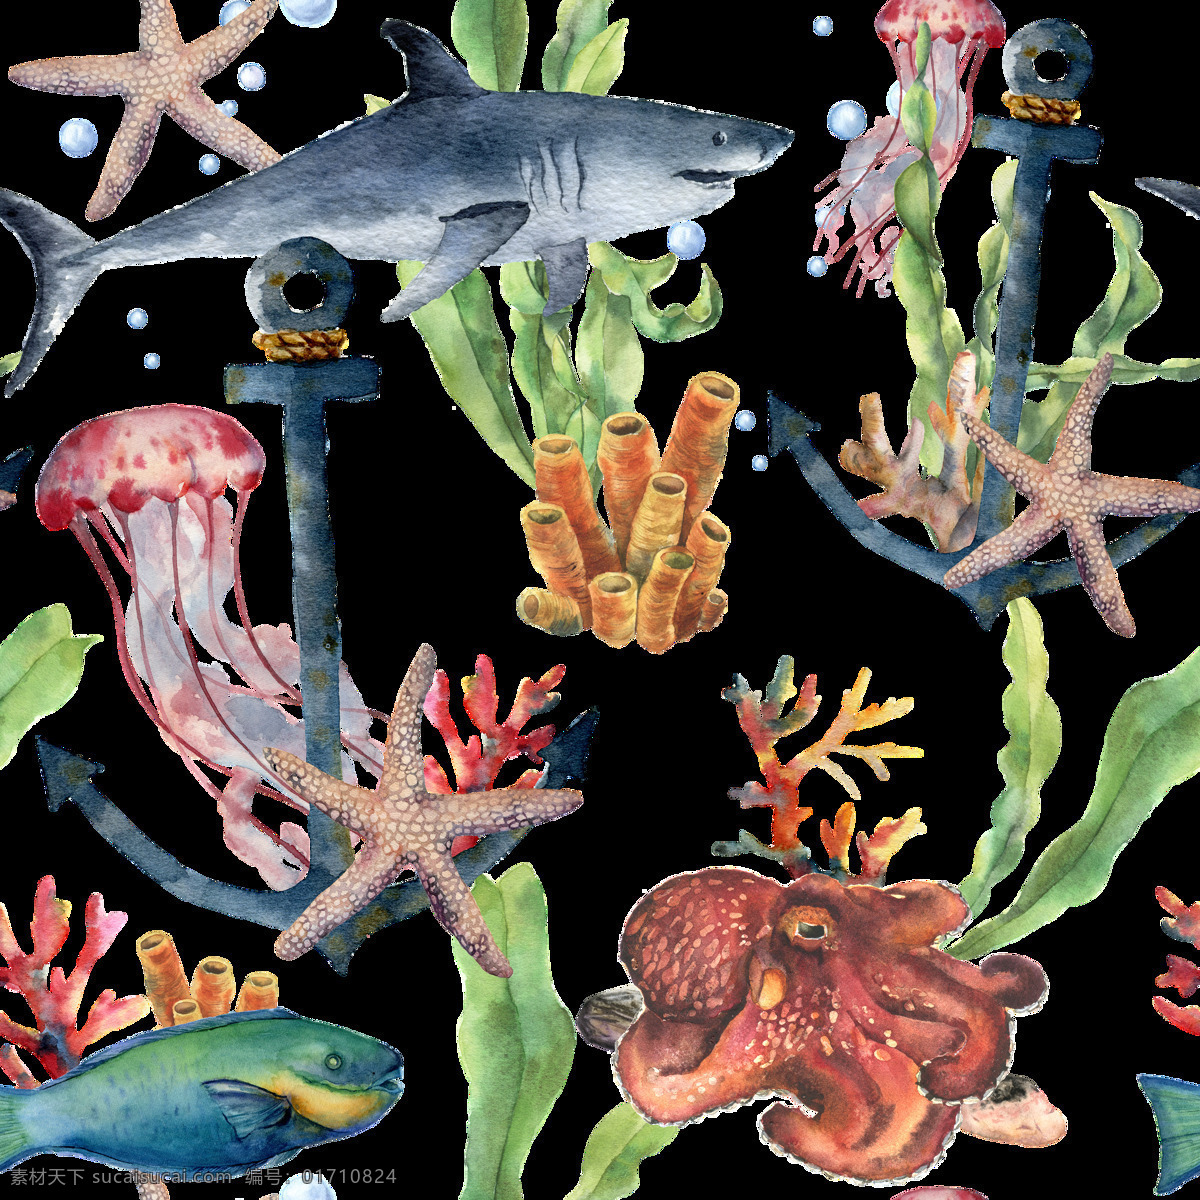 海洋 主题 插画 图案 海洋生物 热带鱼群 水彩插画 海底世界 海洋生物插画 鱼群插画 装饰图案 水草植物插画